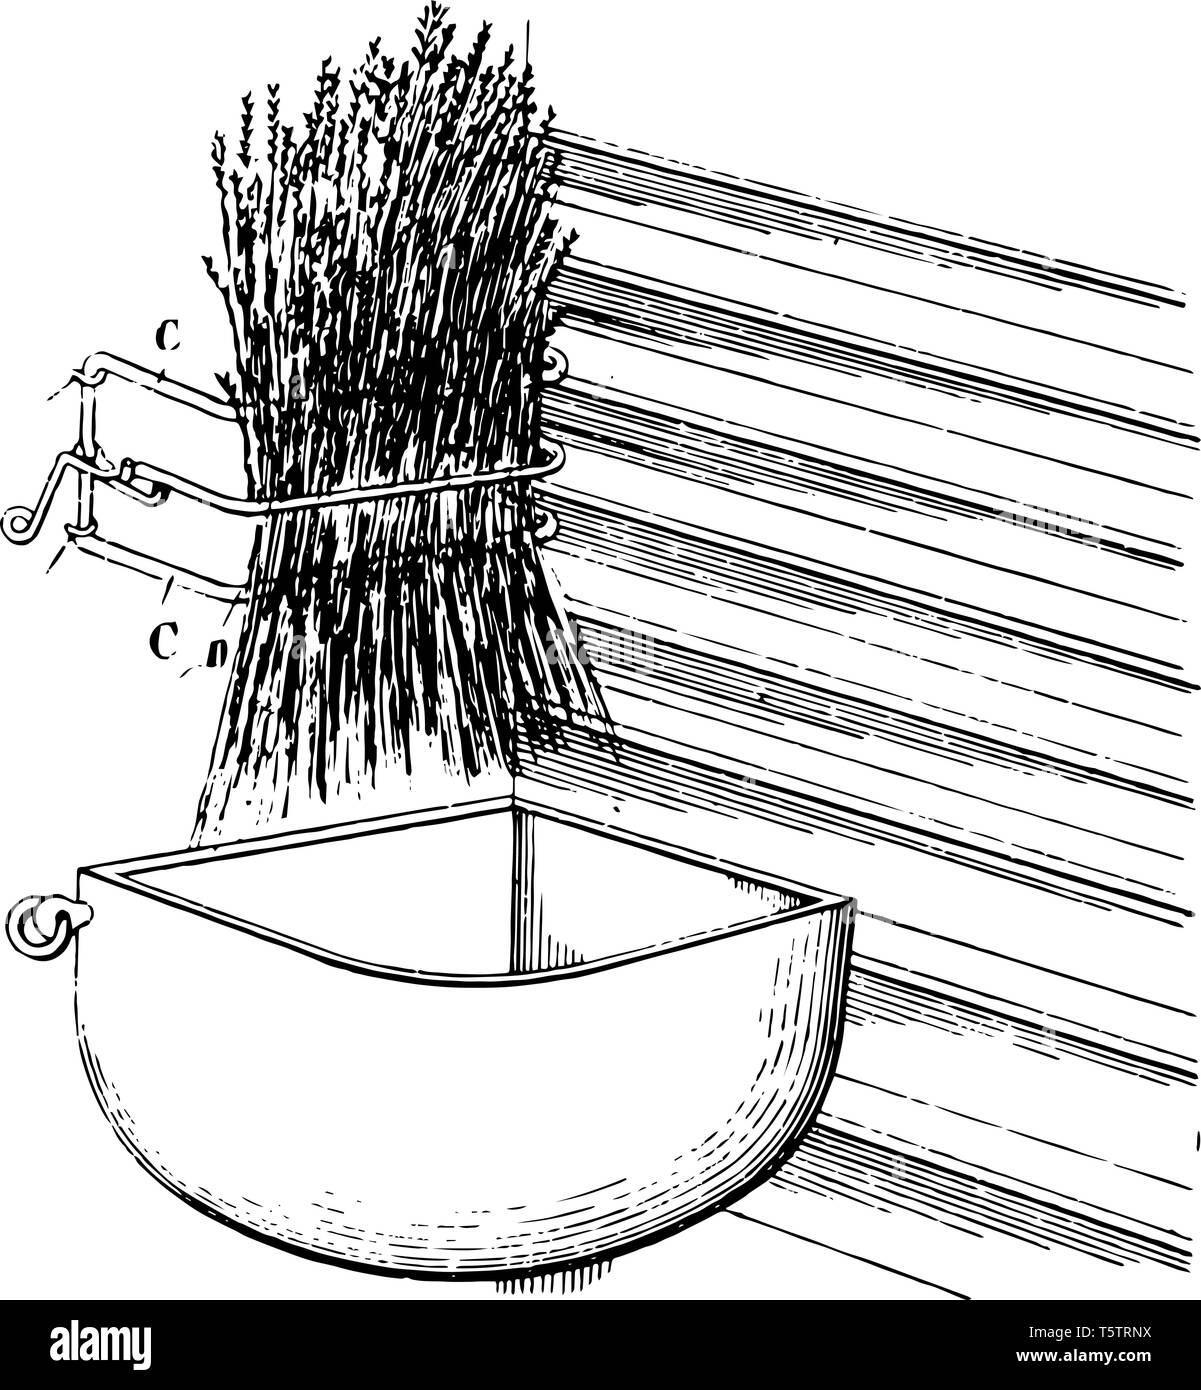 Questa immagine rappresenta il fieno cremagliera che è un verticale  autoportante stendino, vintage disegno della linea di incisione o  illustrazione Immagine e Vettoriale - Alamy